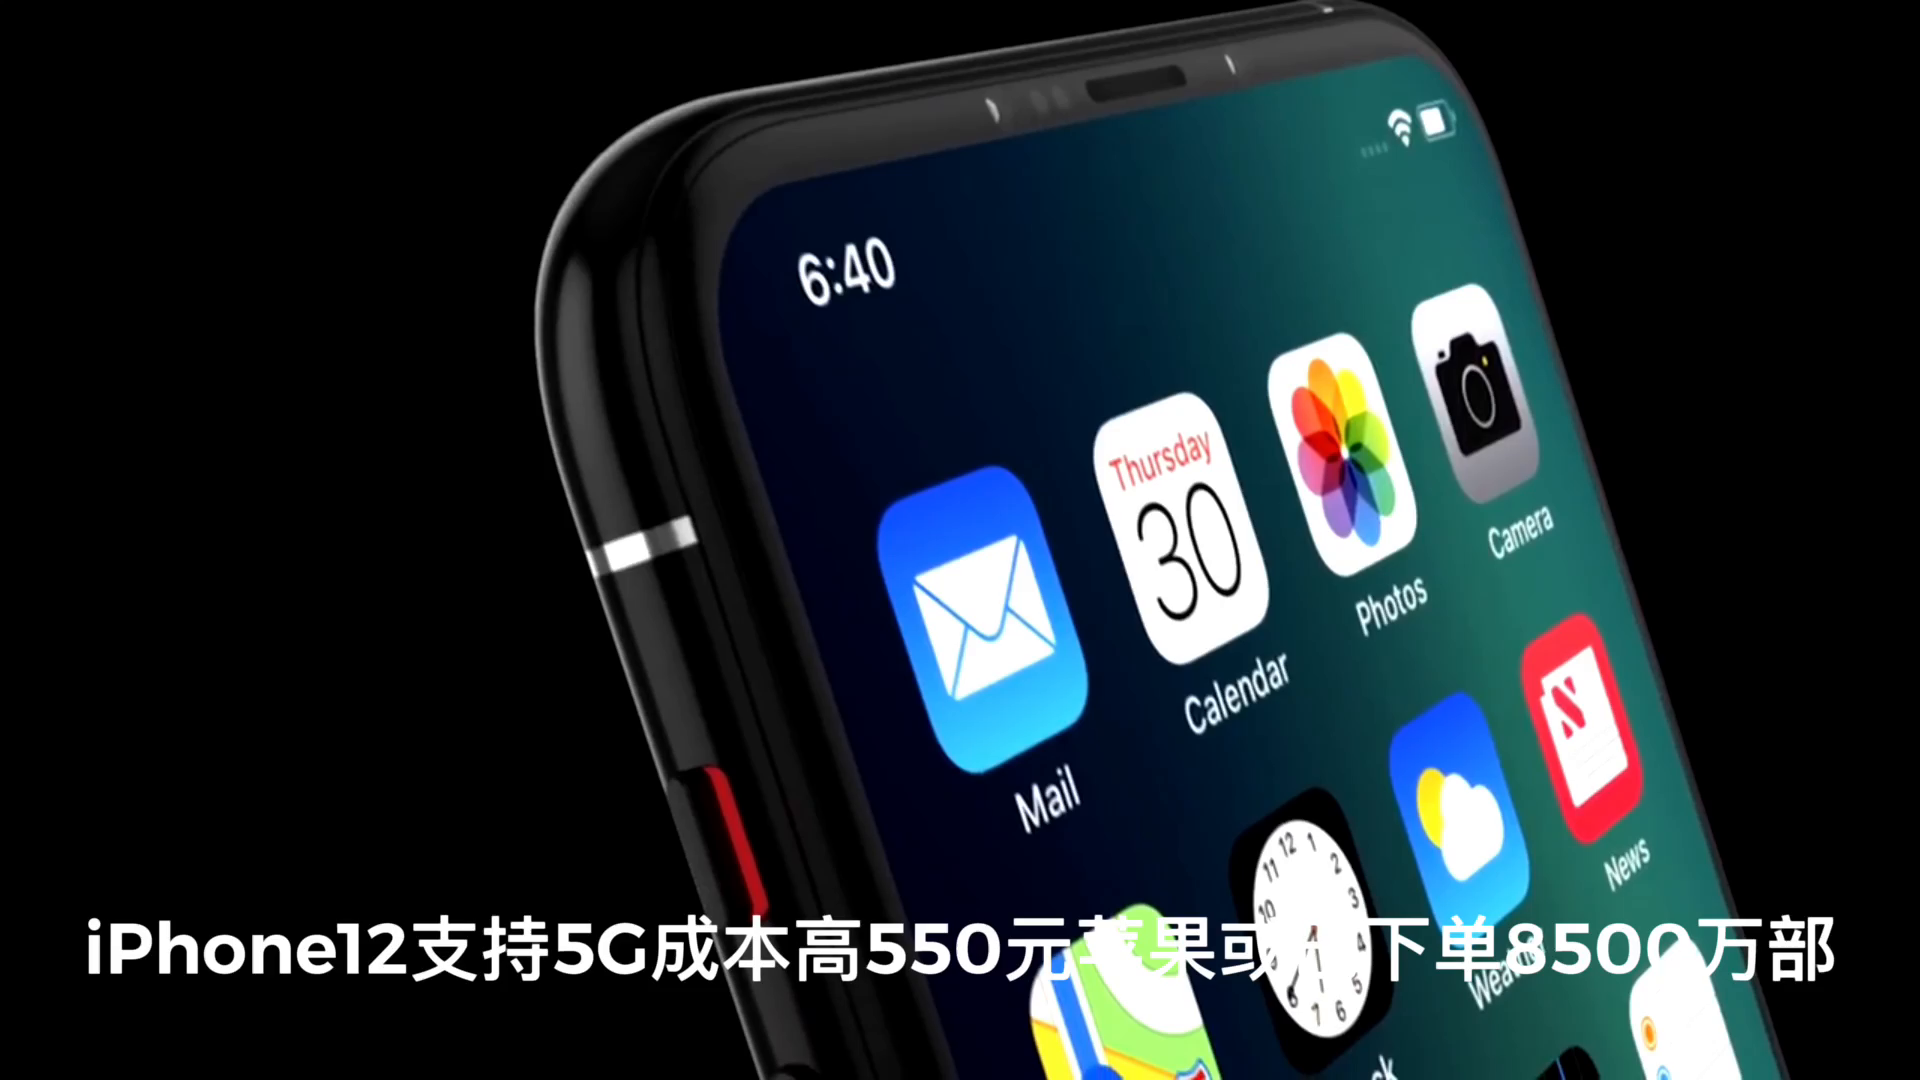 iphone12支持5G成本提高550元